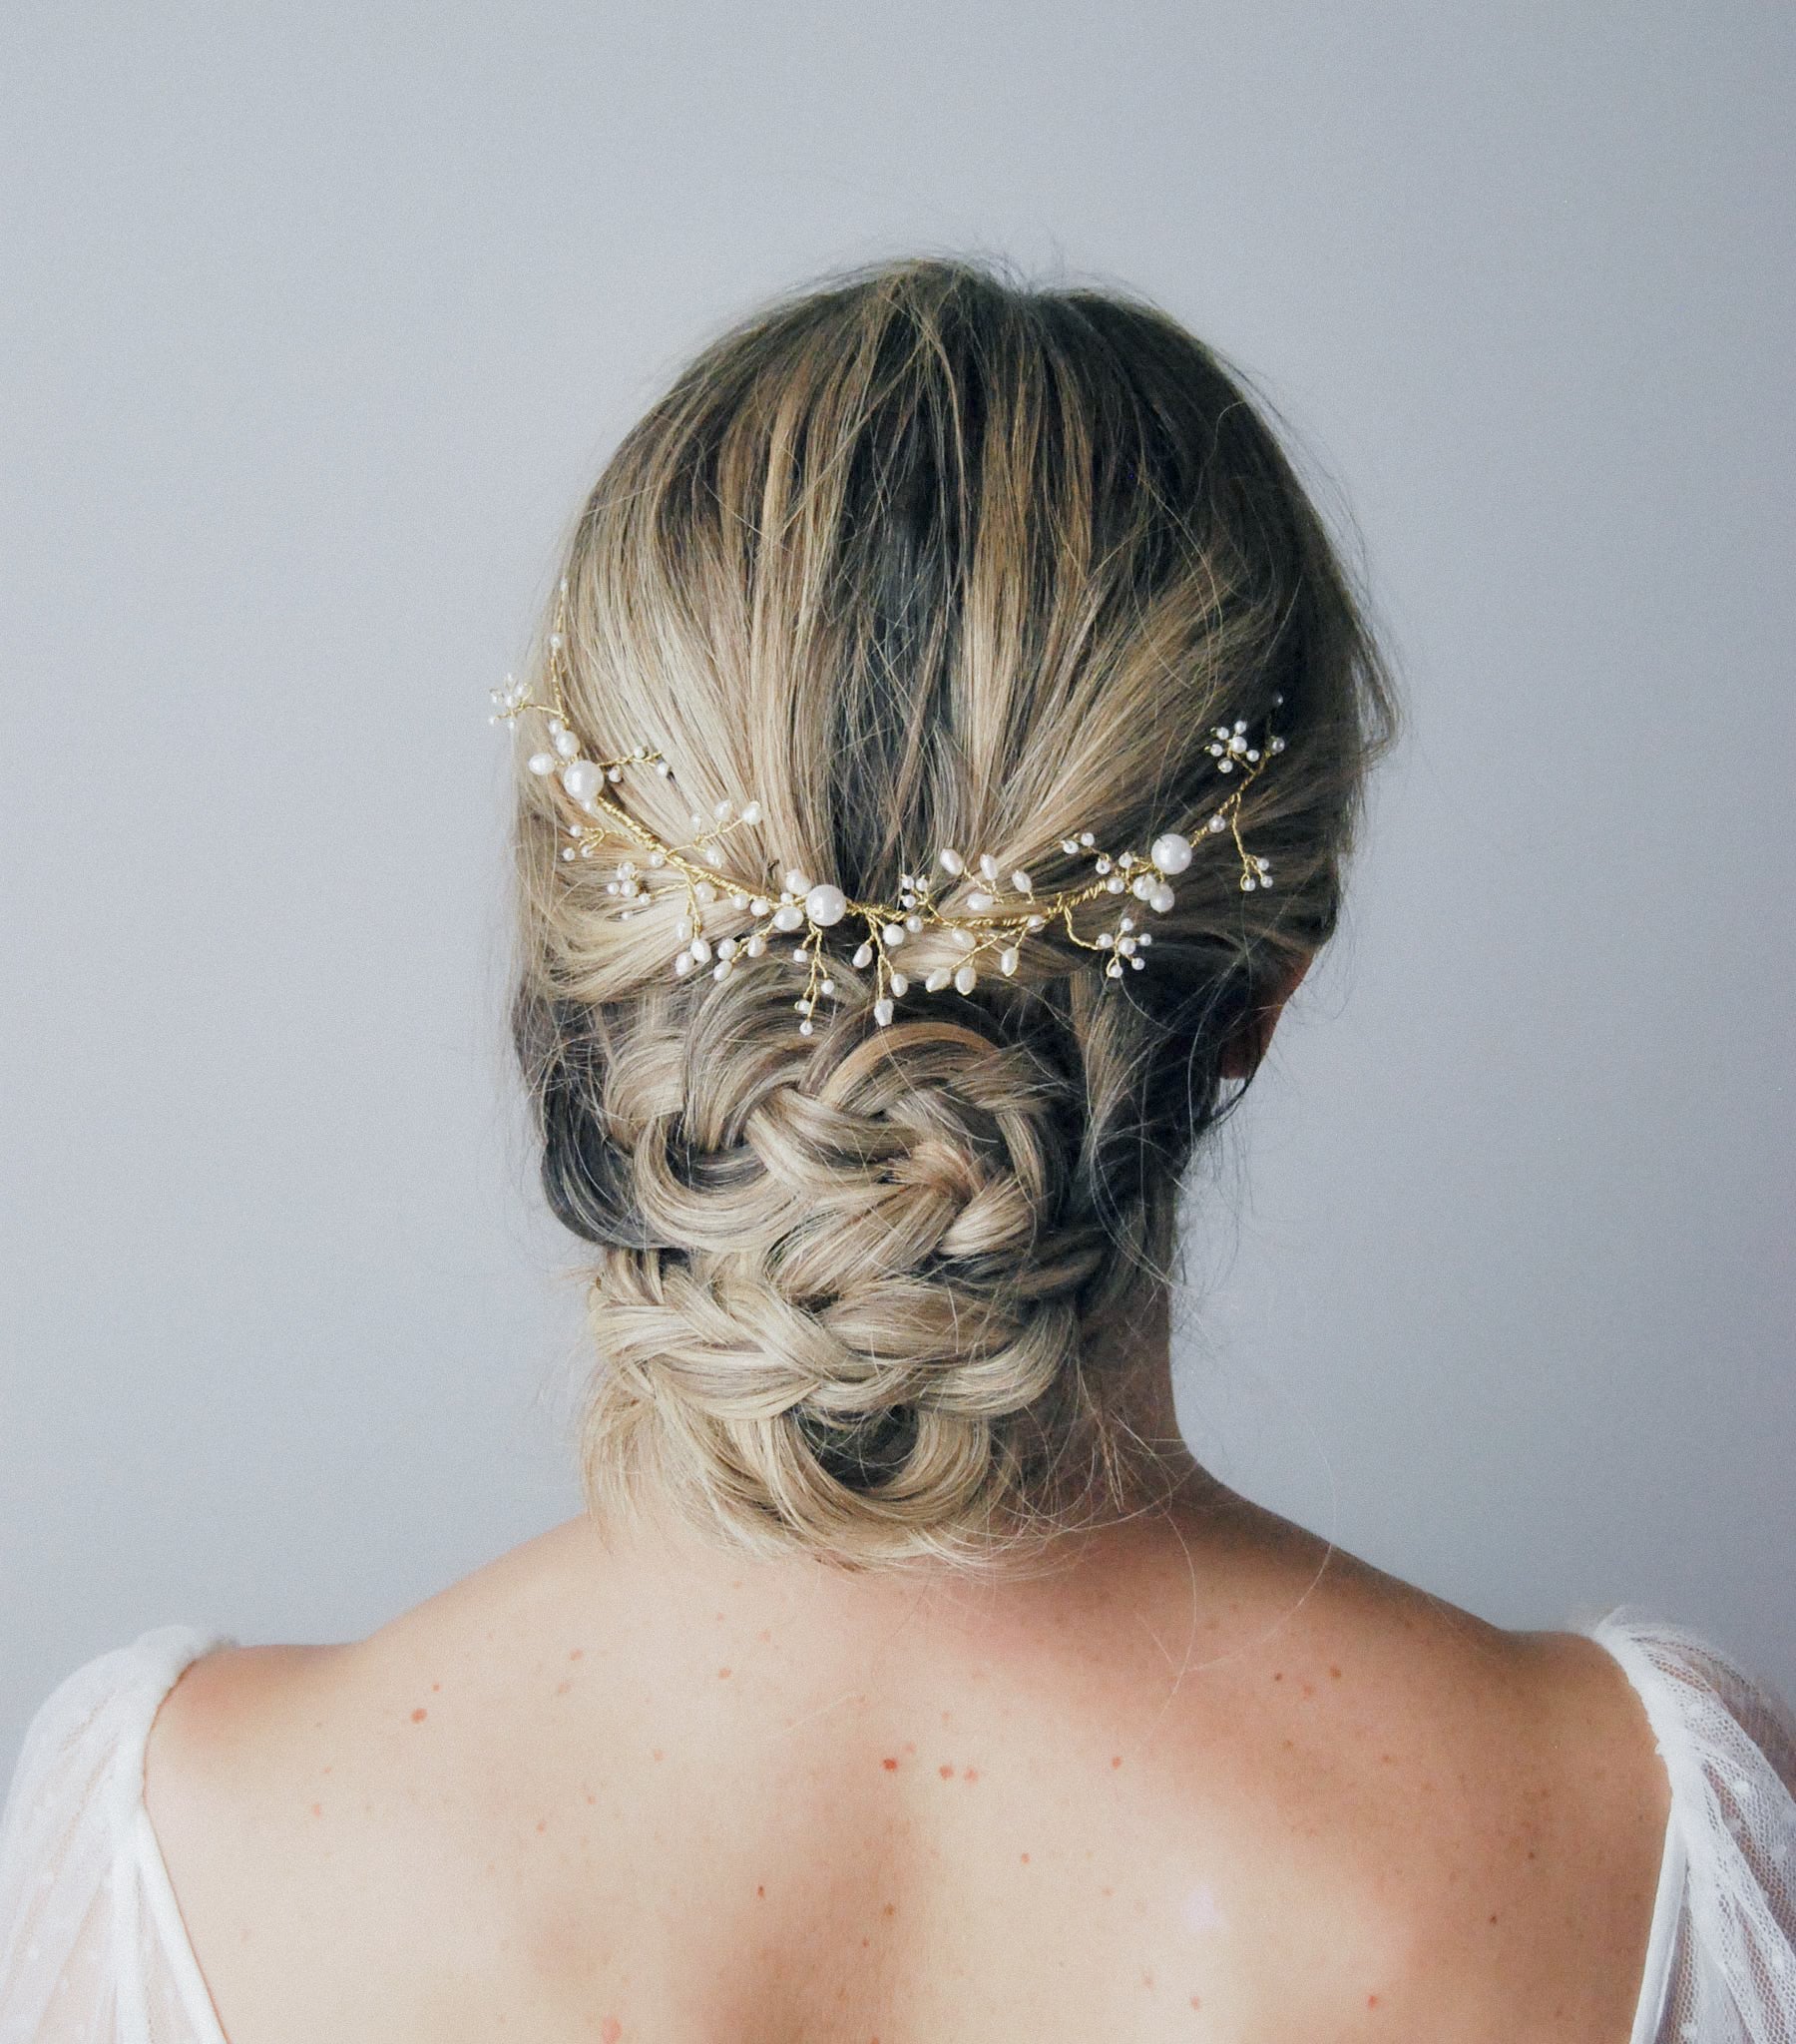 Water pearl hair crown